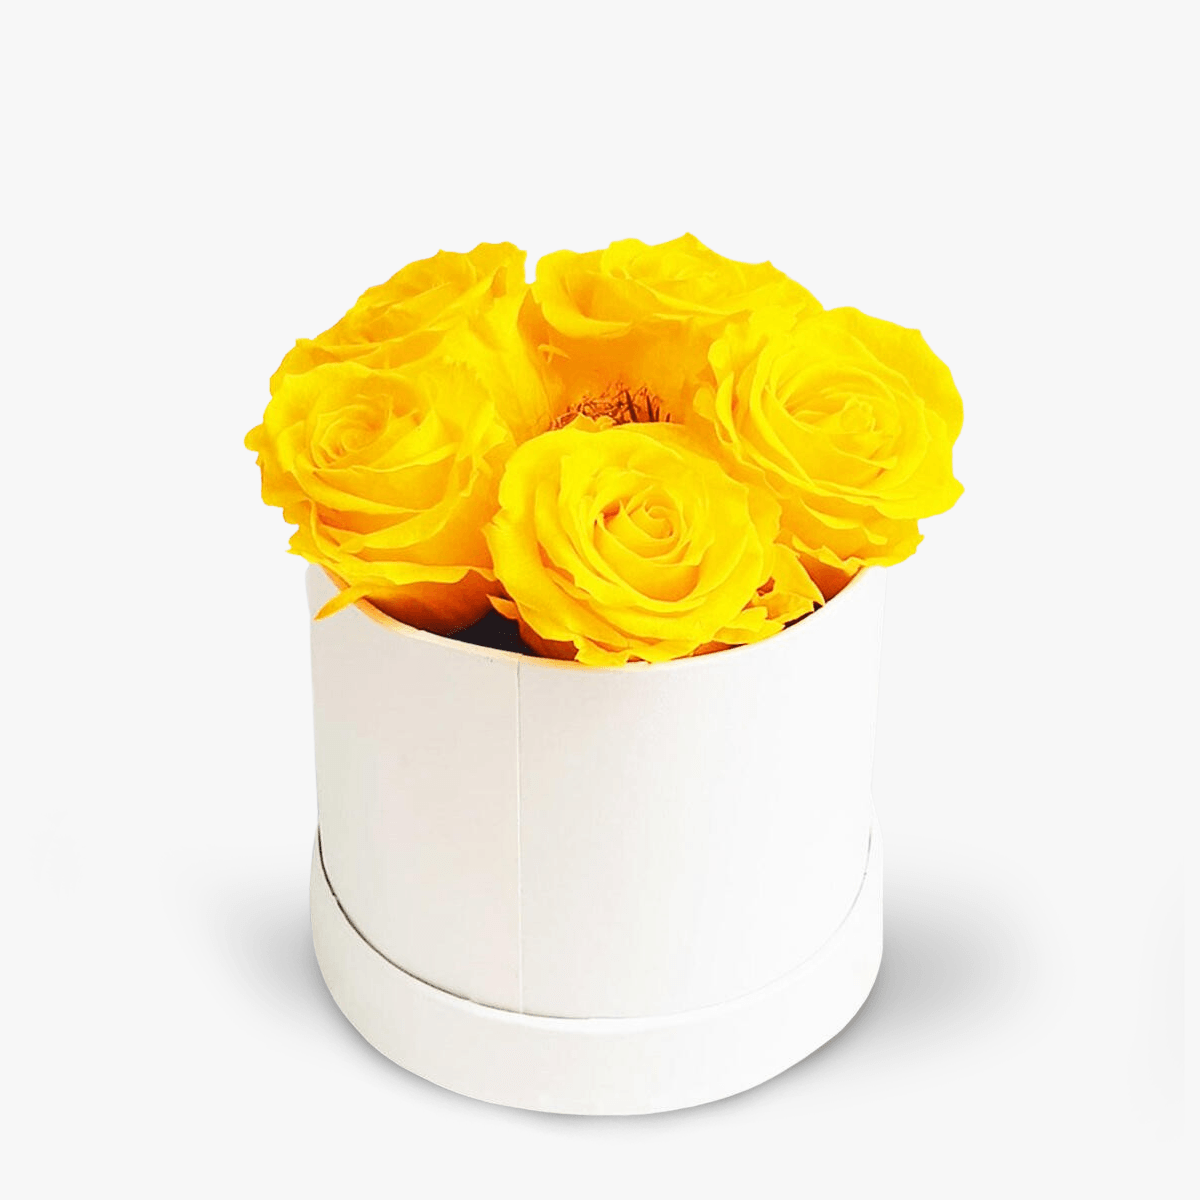 Cutie cu 5 trandafiri galbeni criogenati – Standard criogenati imagine 2022